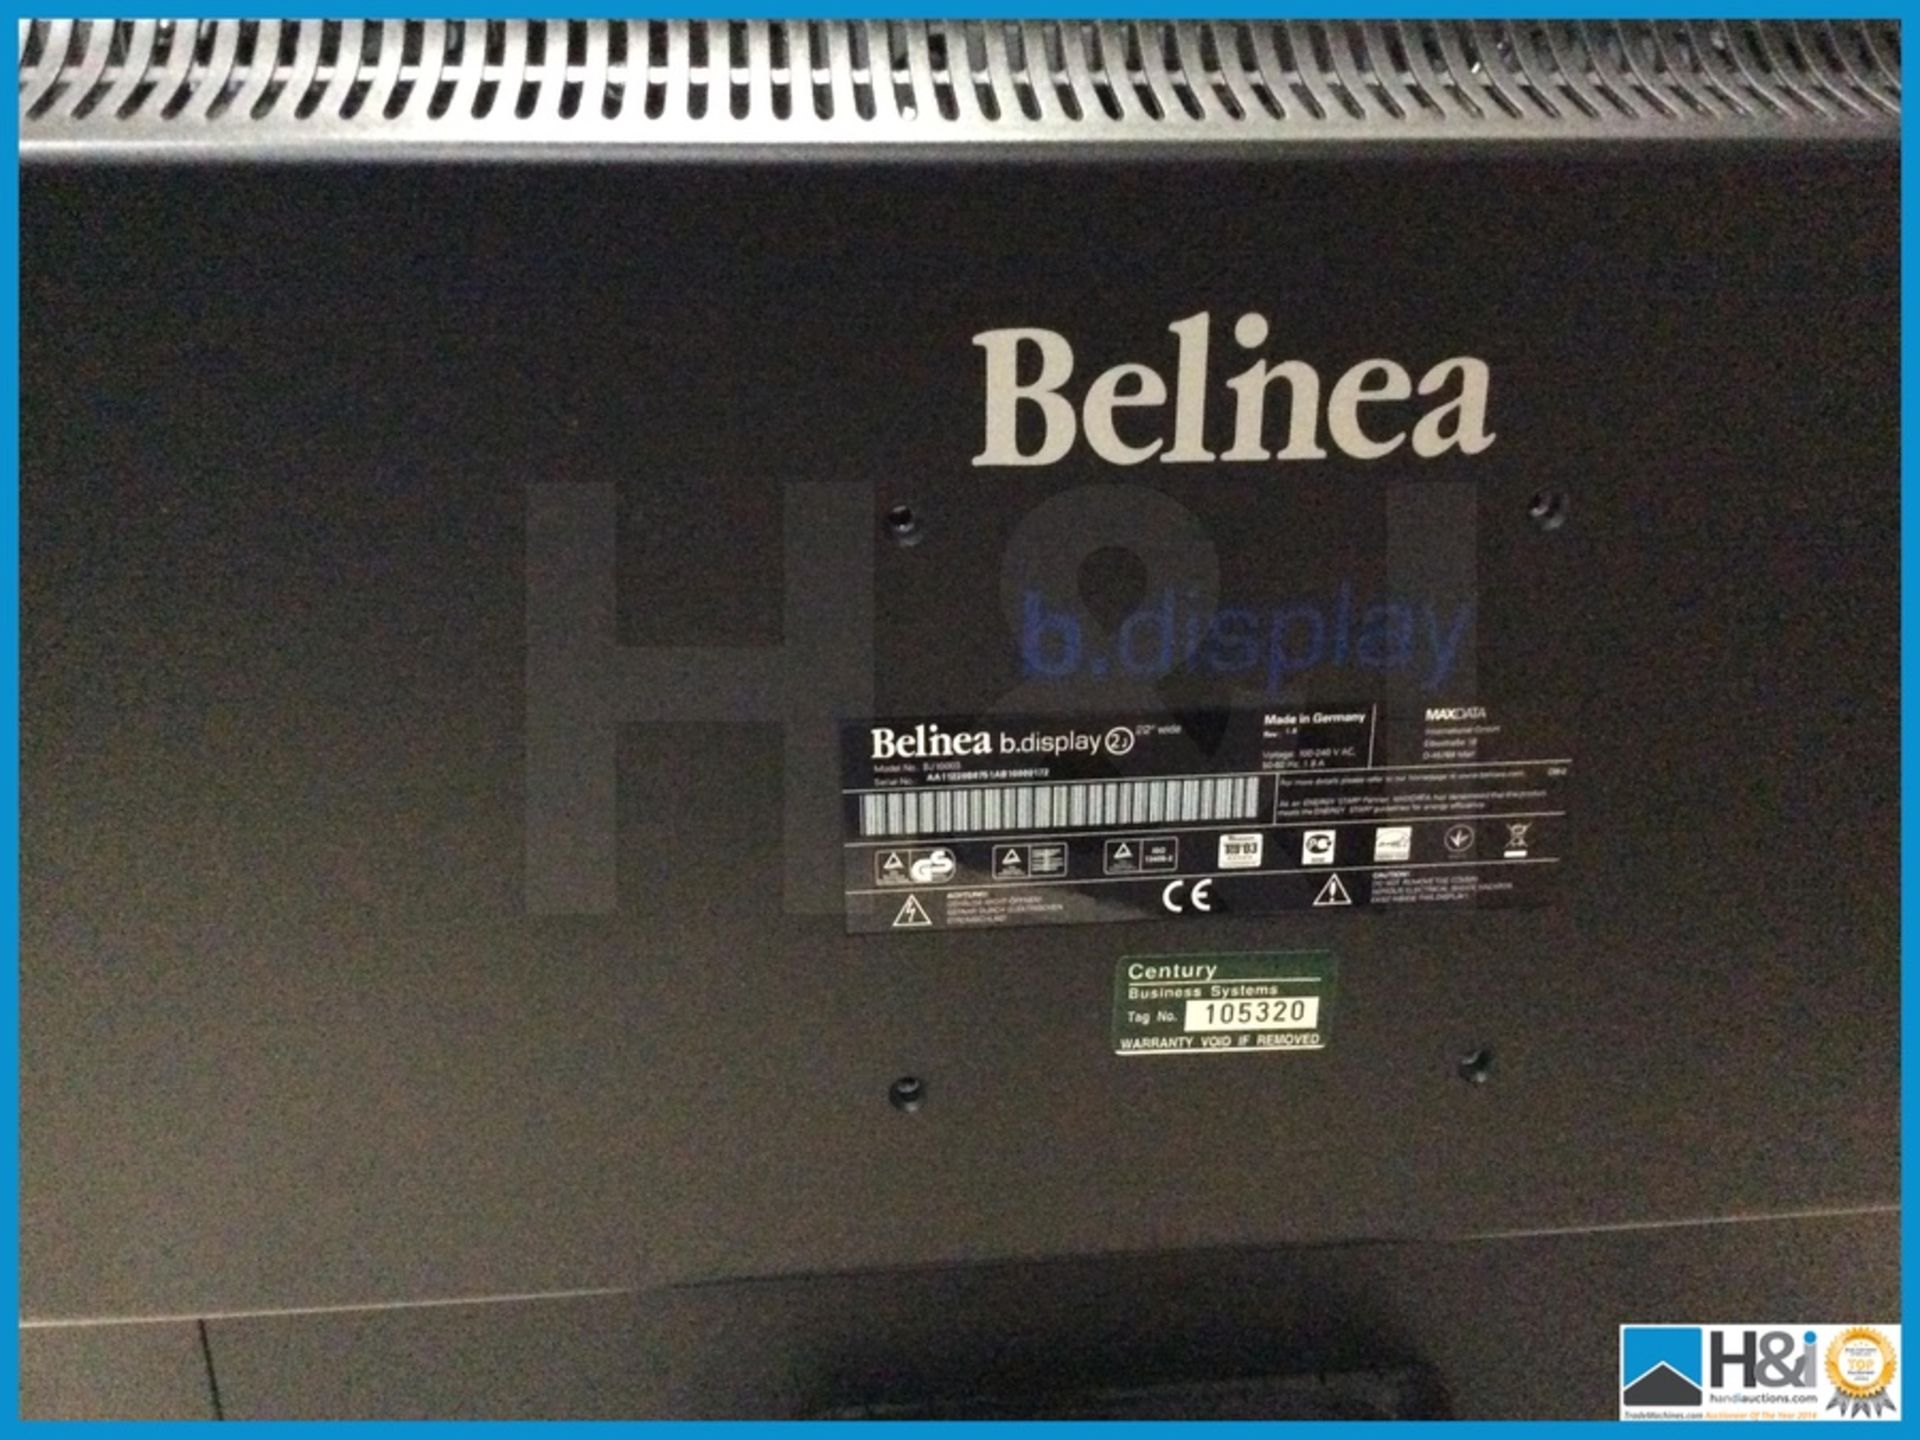 Belnea B.Display Moniter 22" - Image 2 of 2